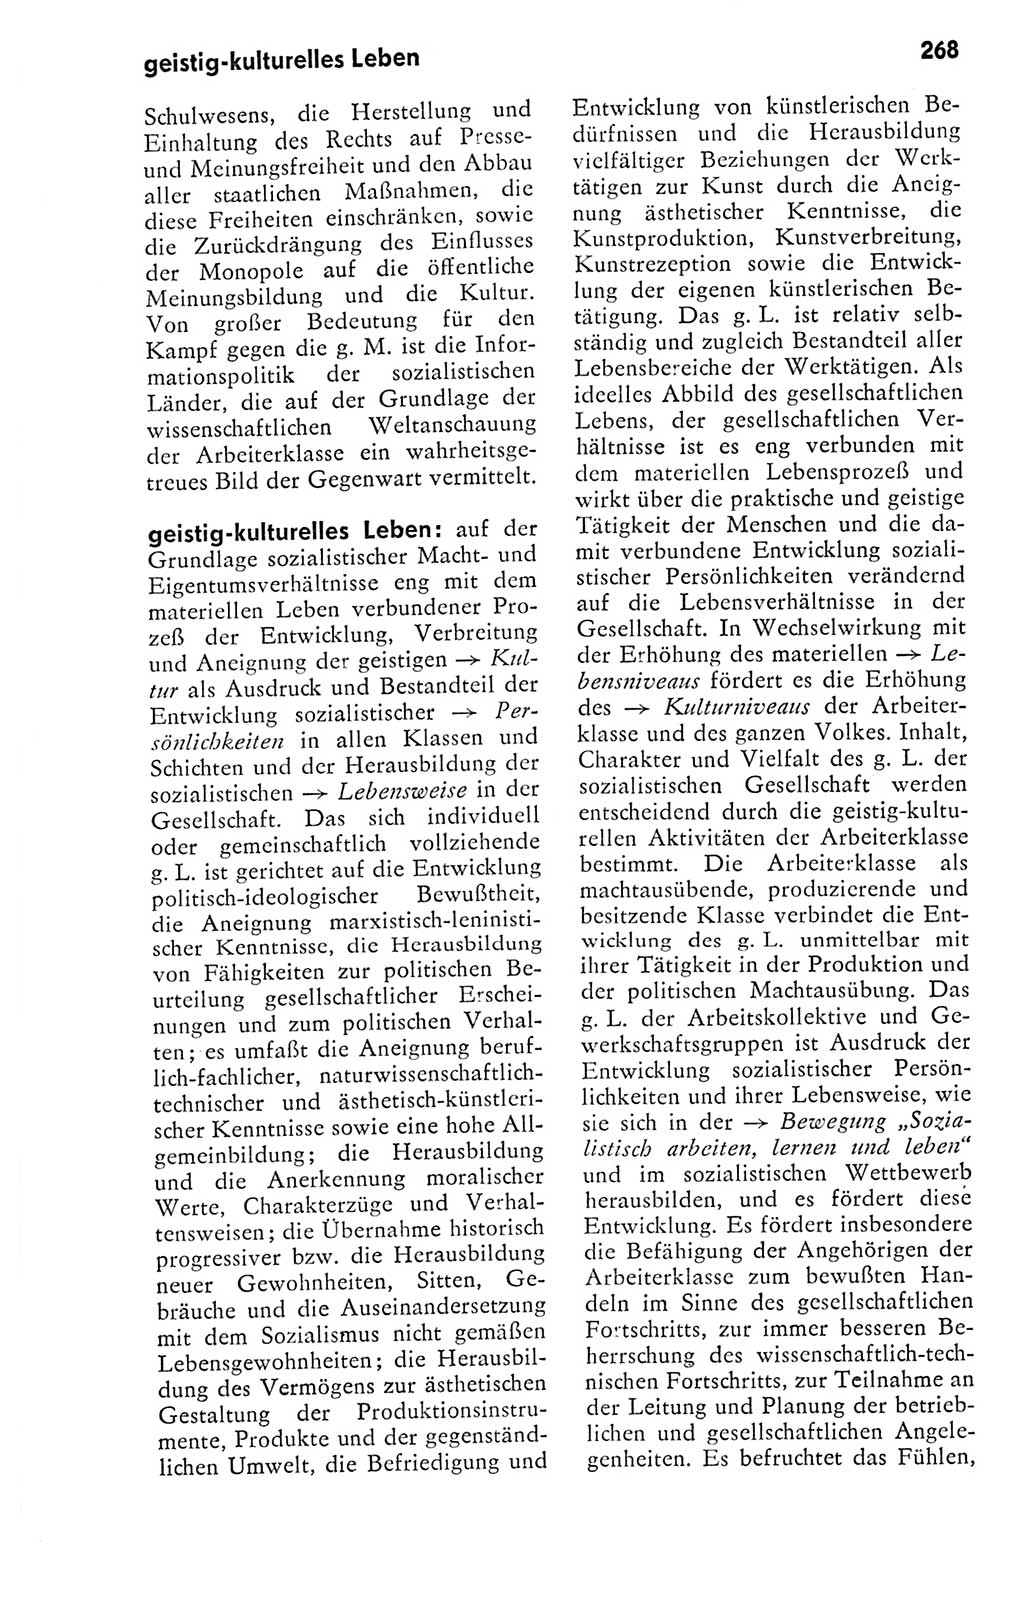 Kleines politisches Wörterbuch [Deutsche Demokratische Republik (DDR)] 1978, Seite 268 (Kl. pol. Wb. DDR 1978, S. 268)